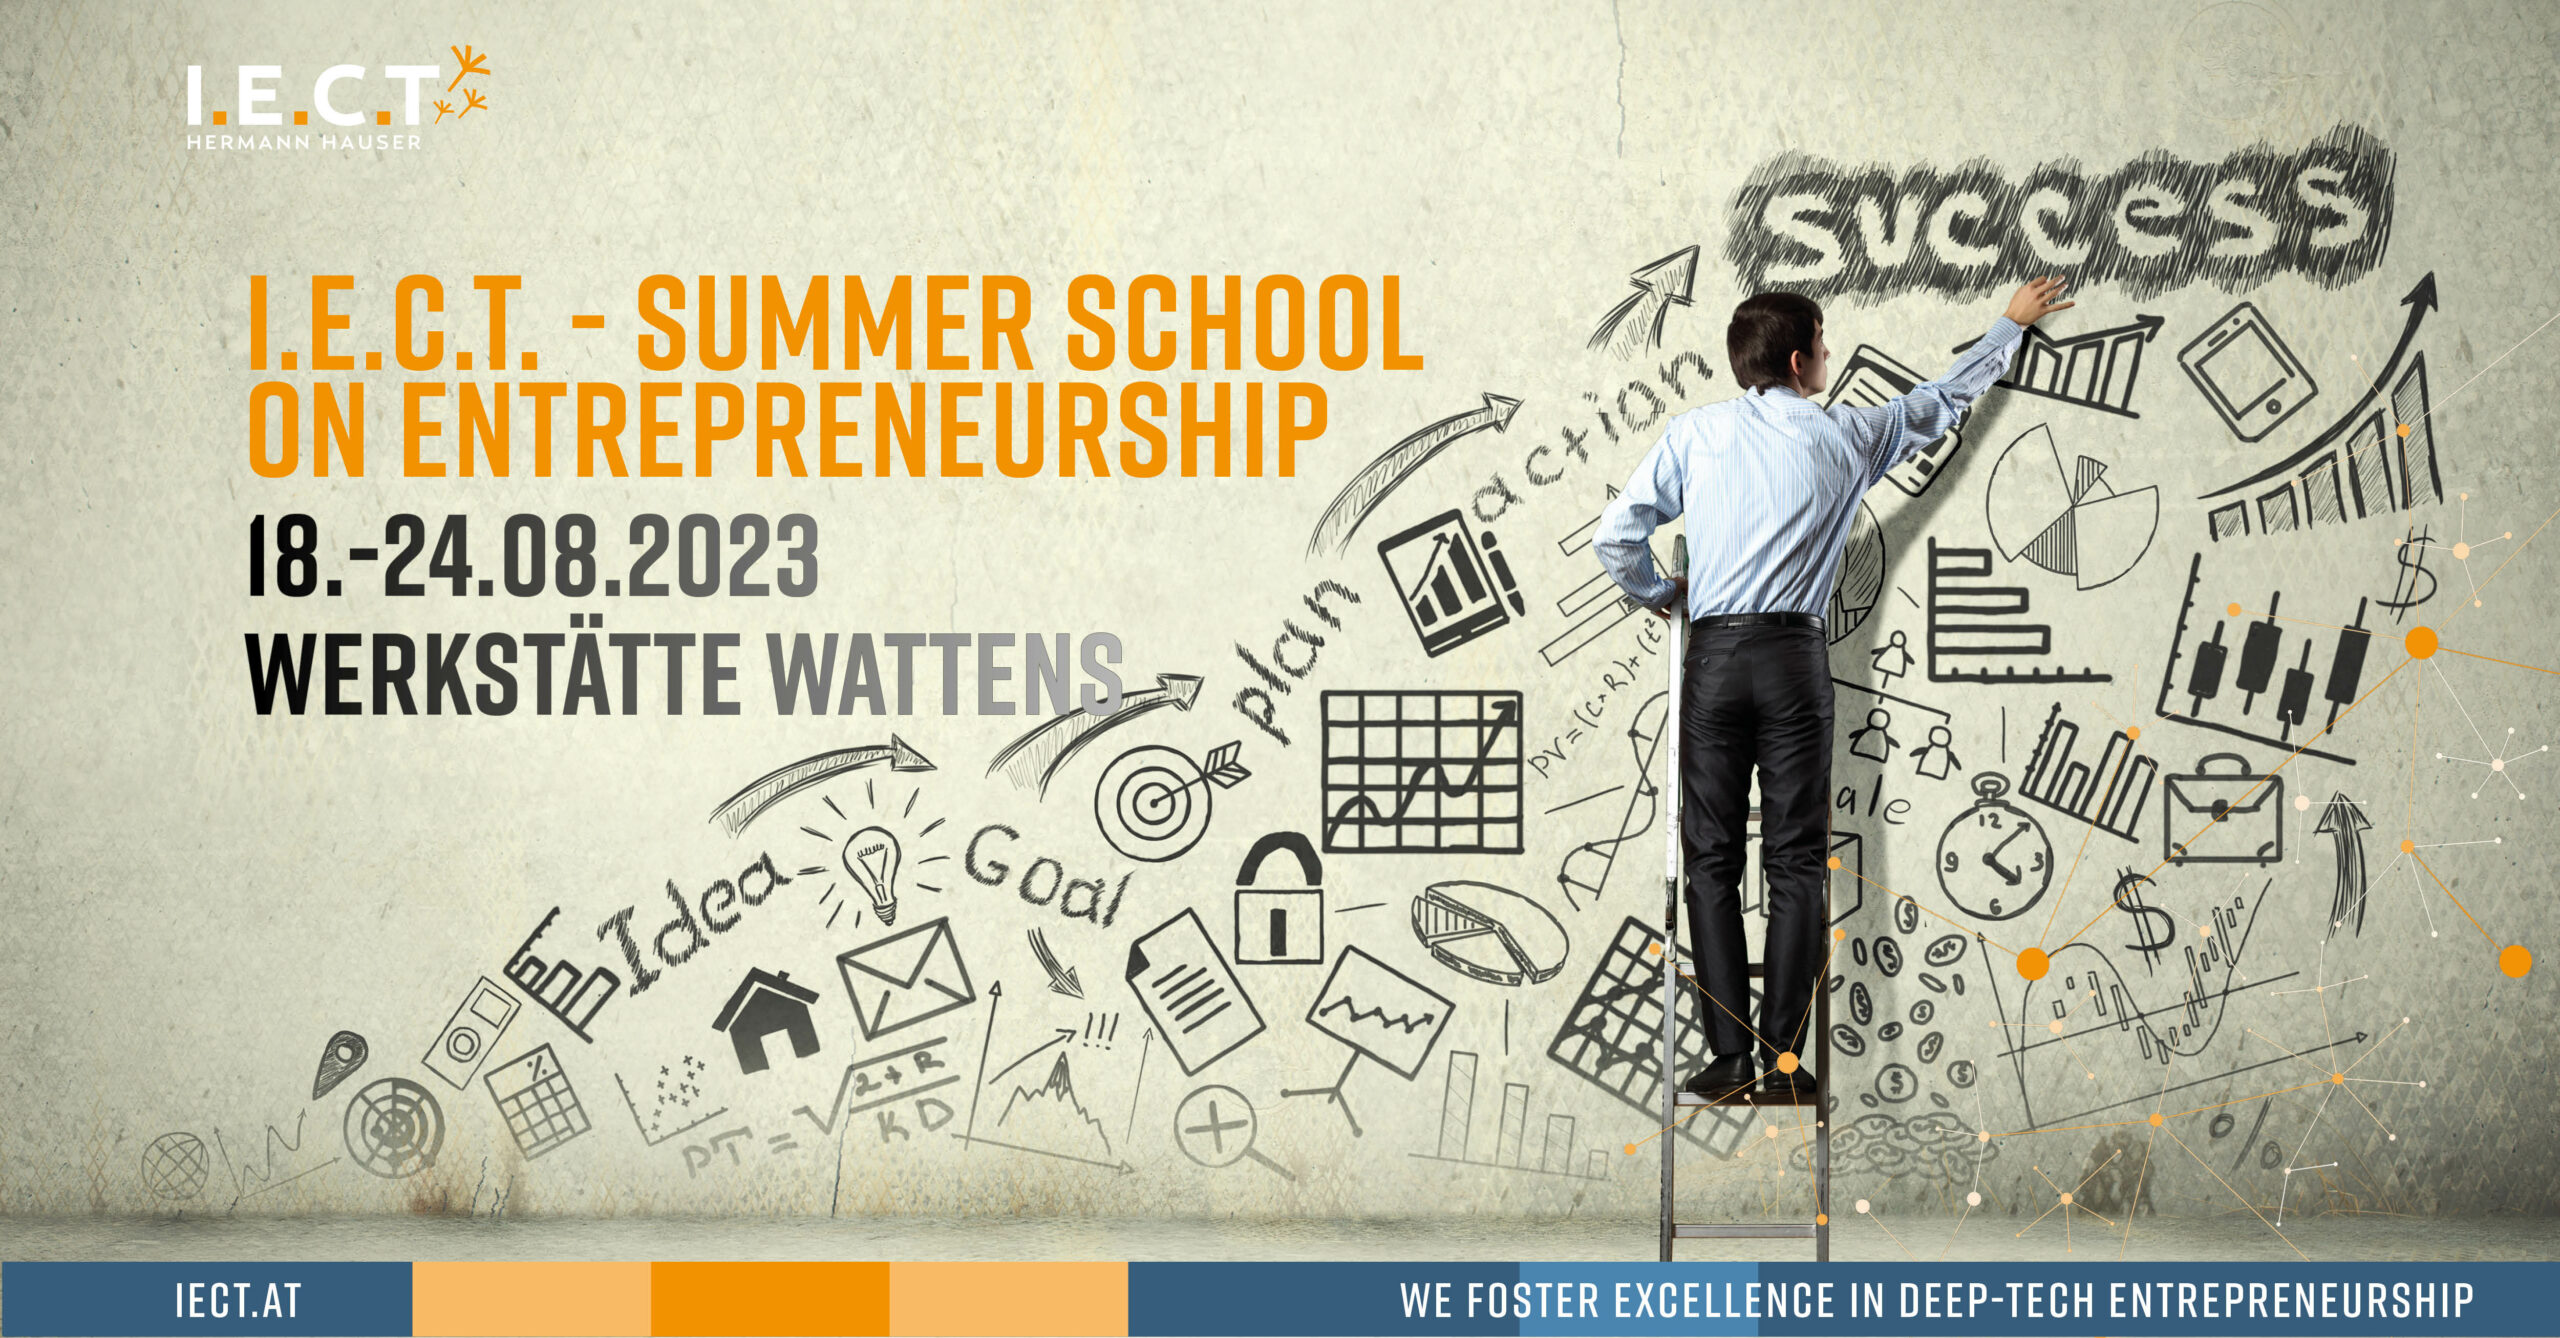 I.E.C.T. - Summer School on Entrepreneurship 2023